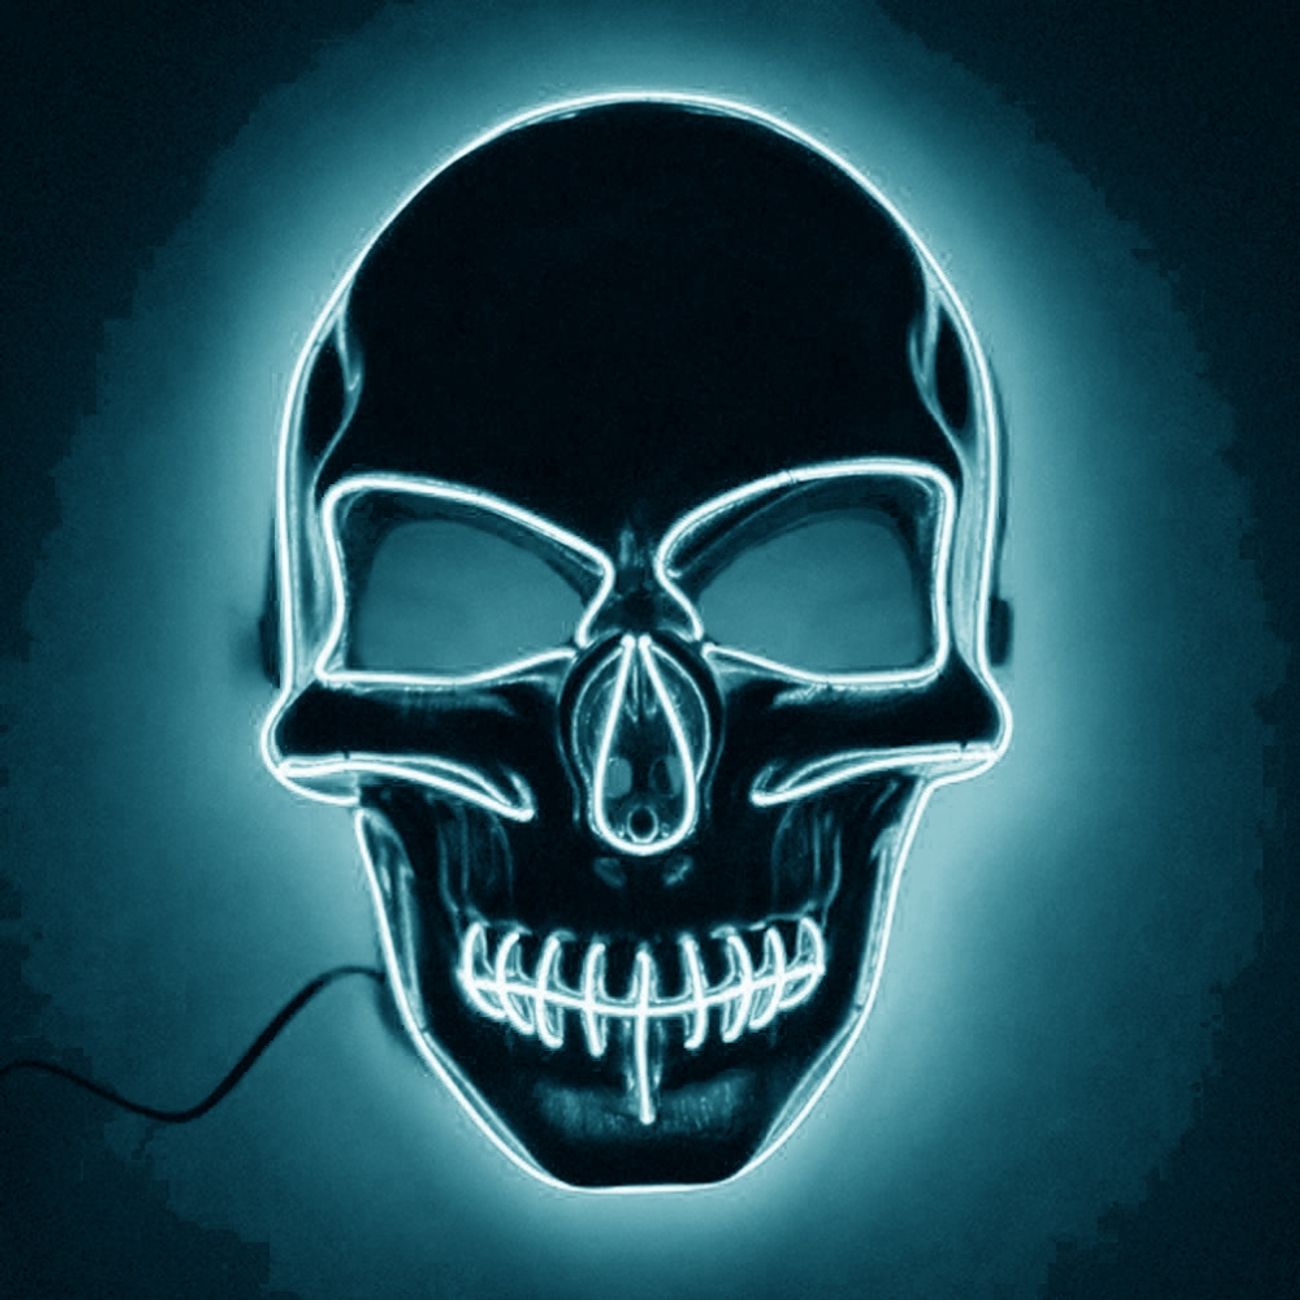 el-wire-skull-led-mask2-16